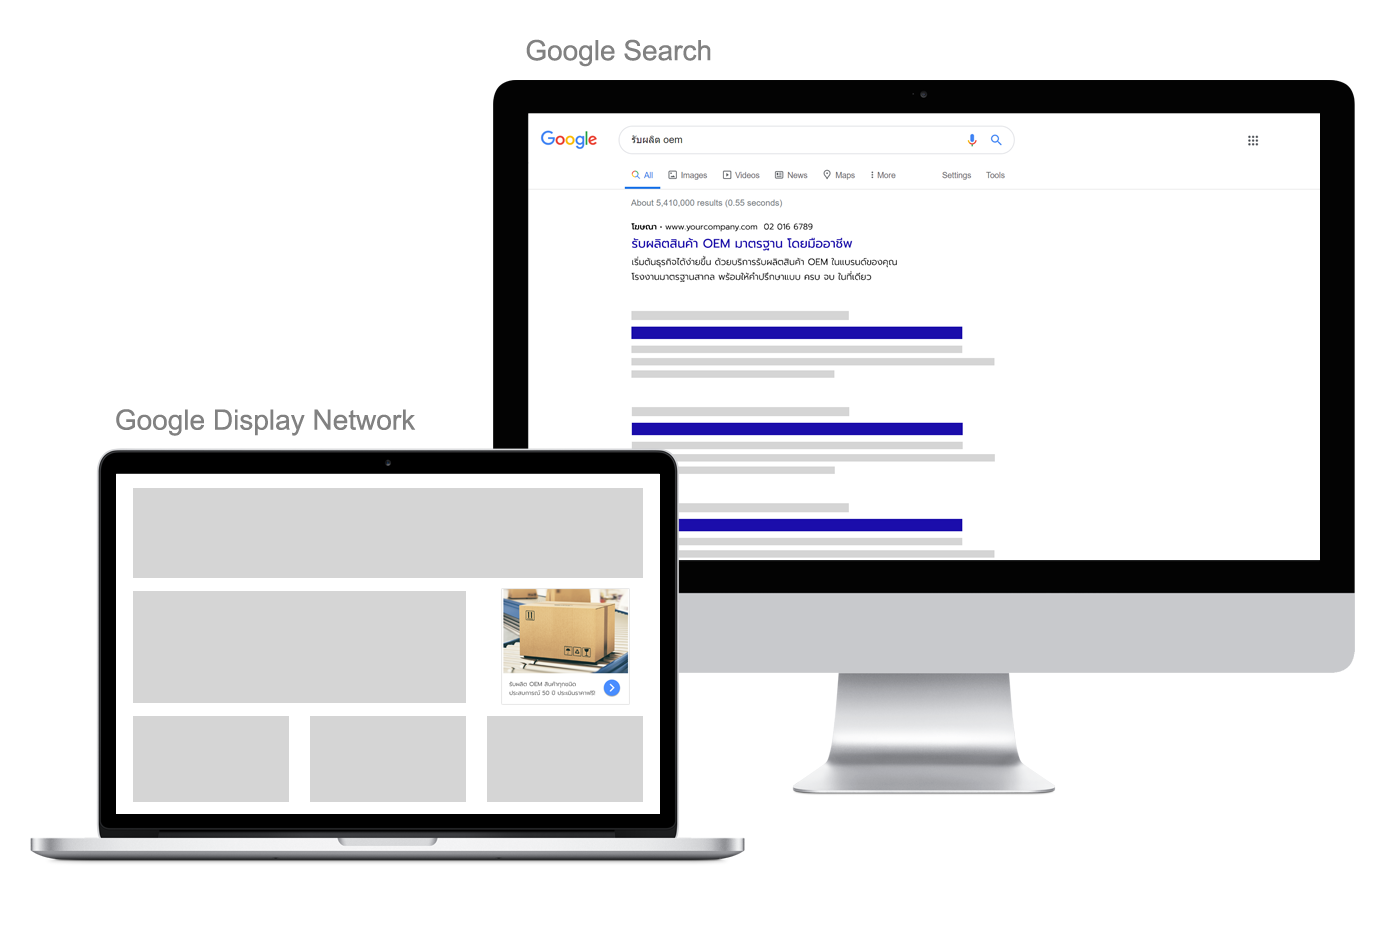 AdPro Dynamic บริการรับทำโฆษณา Google Search GDN YouTube แบบเน้นผลลัพธ์ โดยผู้เชี่ยวชาญตัวจริง ประสบการณ์กว่า 10 ปี และนวัตกรรม Marketing Tech และ AI ที่จะช่วยให้ได้ผลลัพธ์ทางโฆษณาดีขึ้น